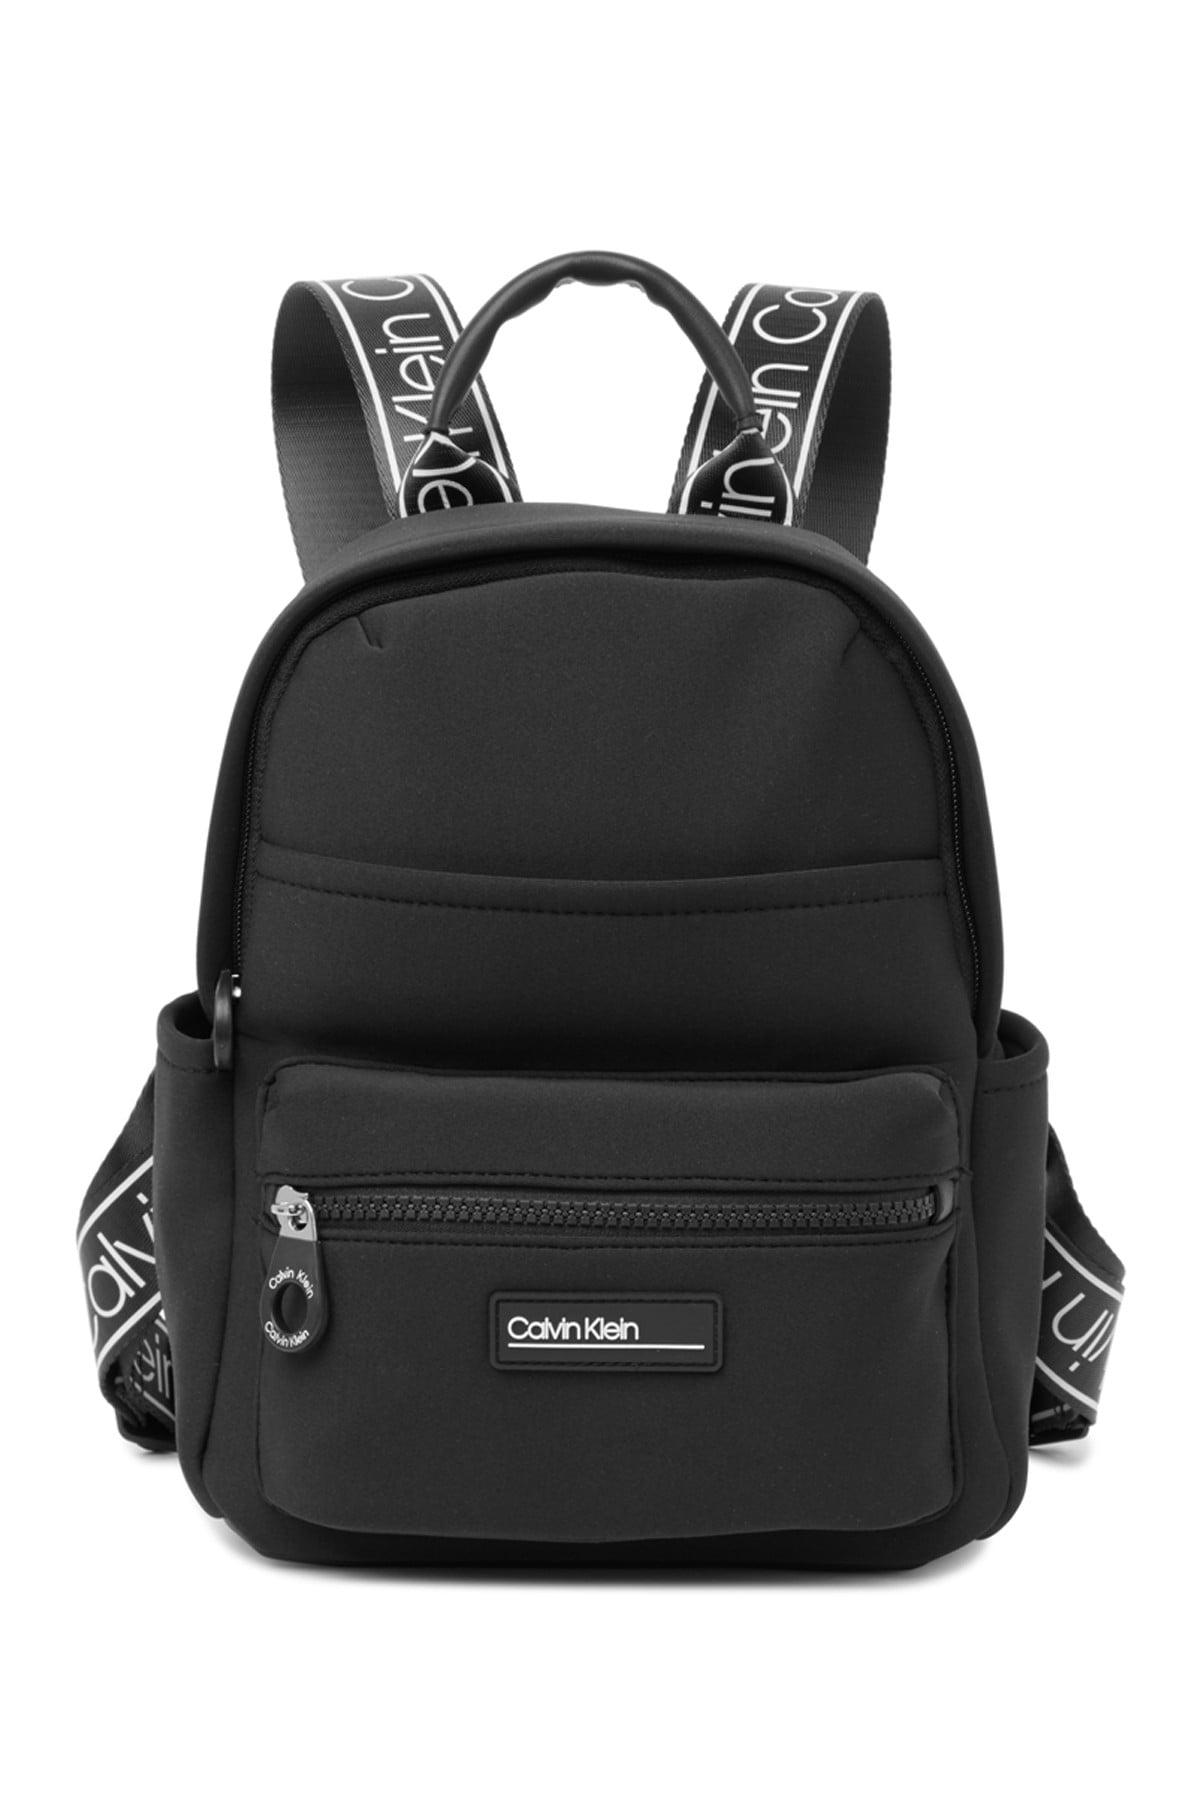 Calvin Klein Neoprene Logo Backpack in Black - Lyst